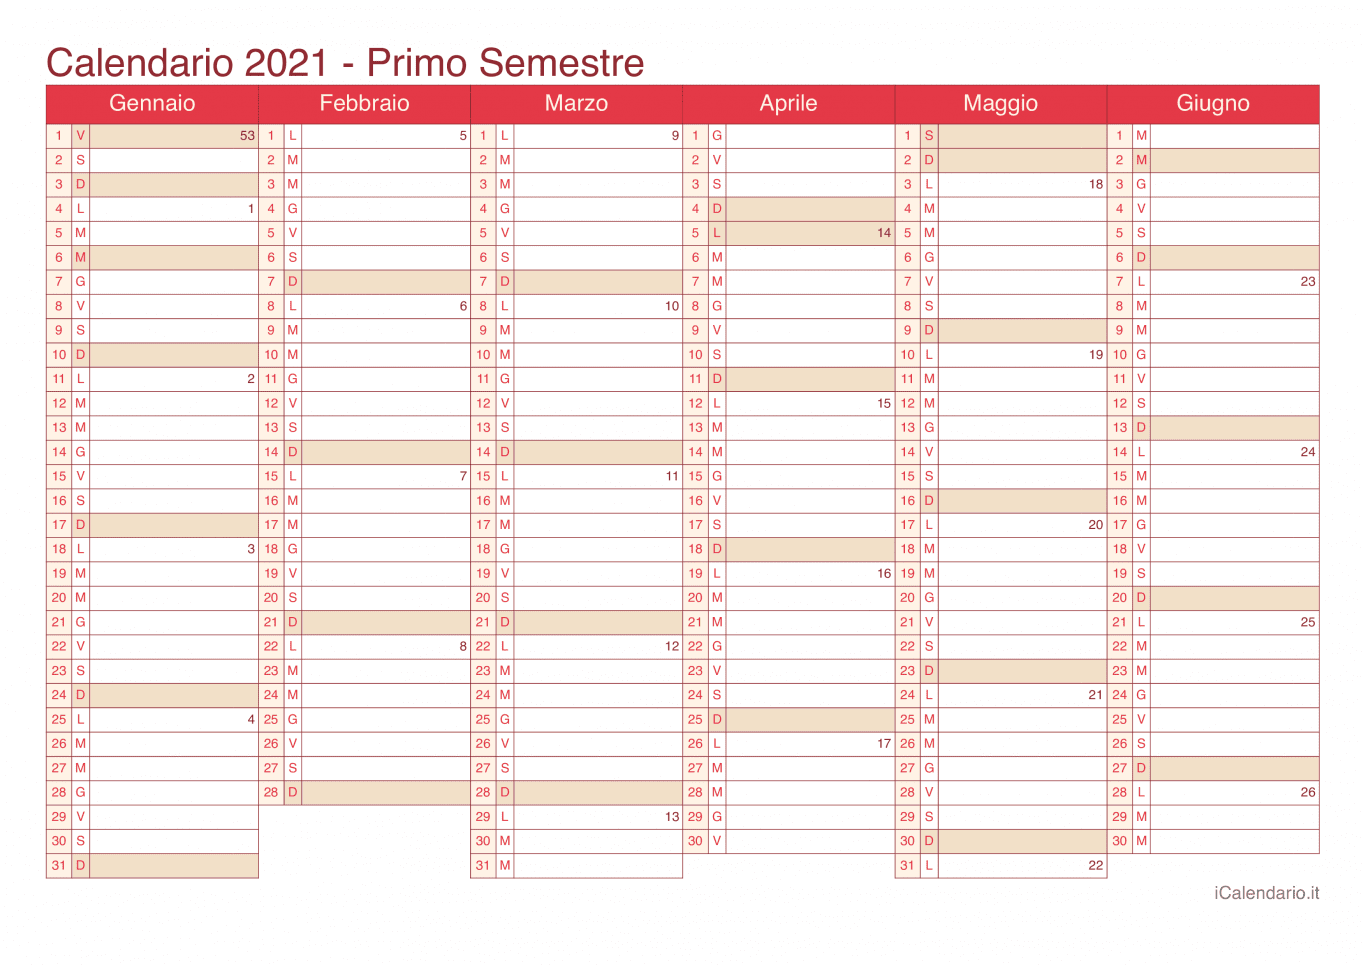 Calendario semestrale con numeri delle settimane 2021 - Cherry